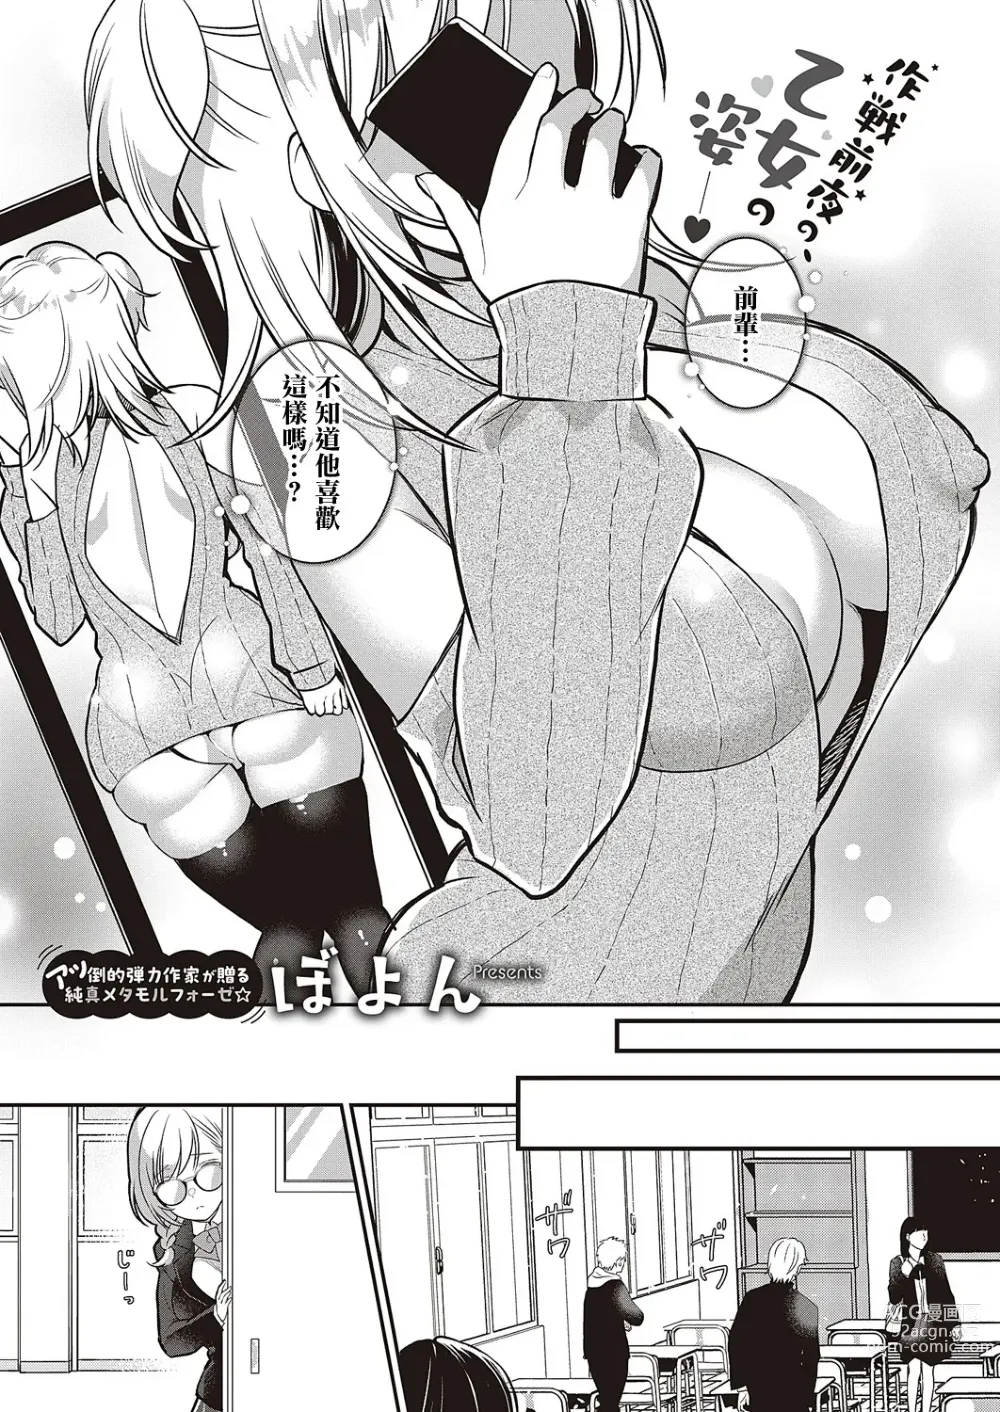 Page 1 of manga Ganbaru Kanojo wa Okirai desu ka?